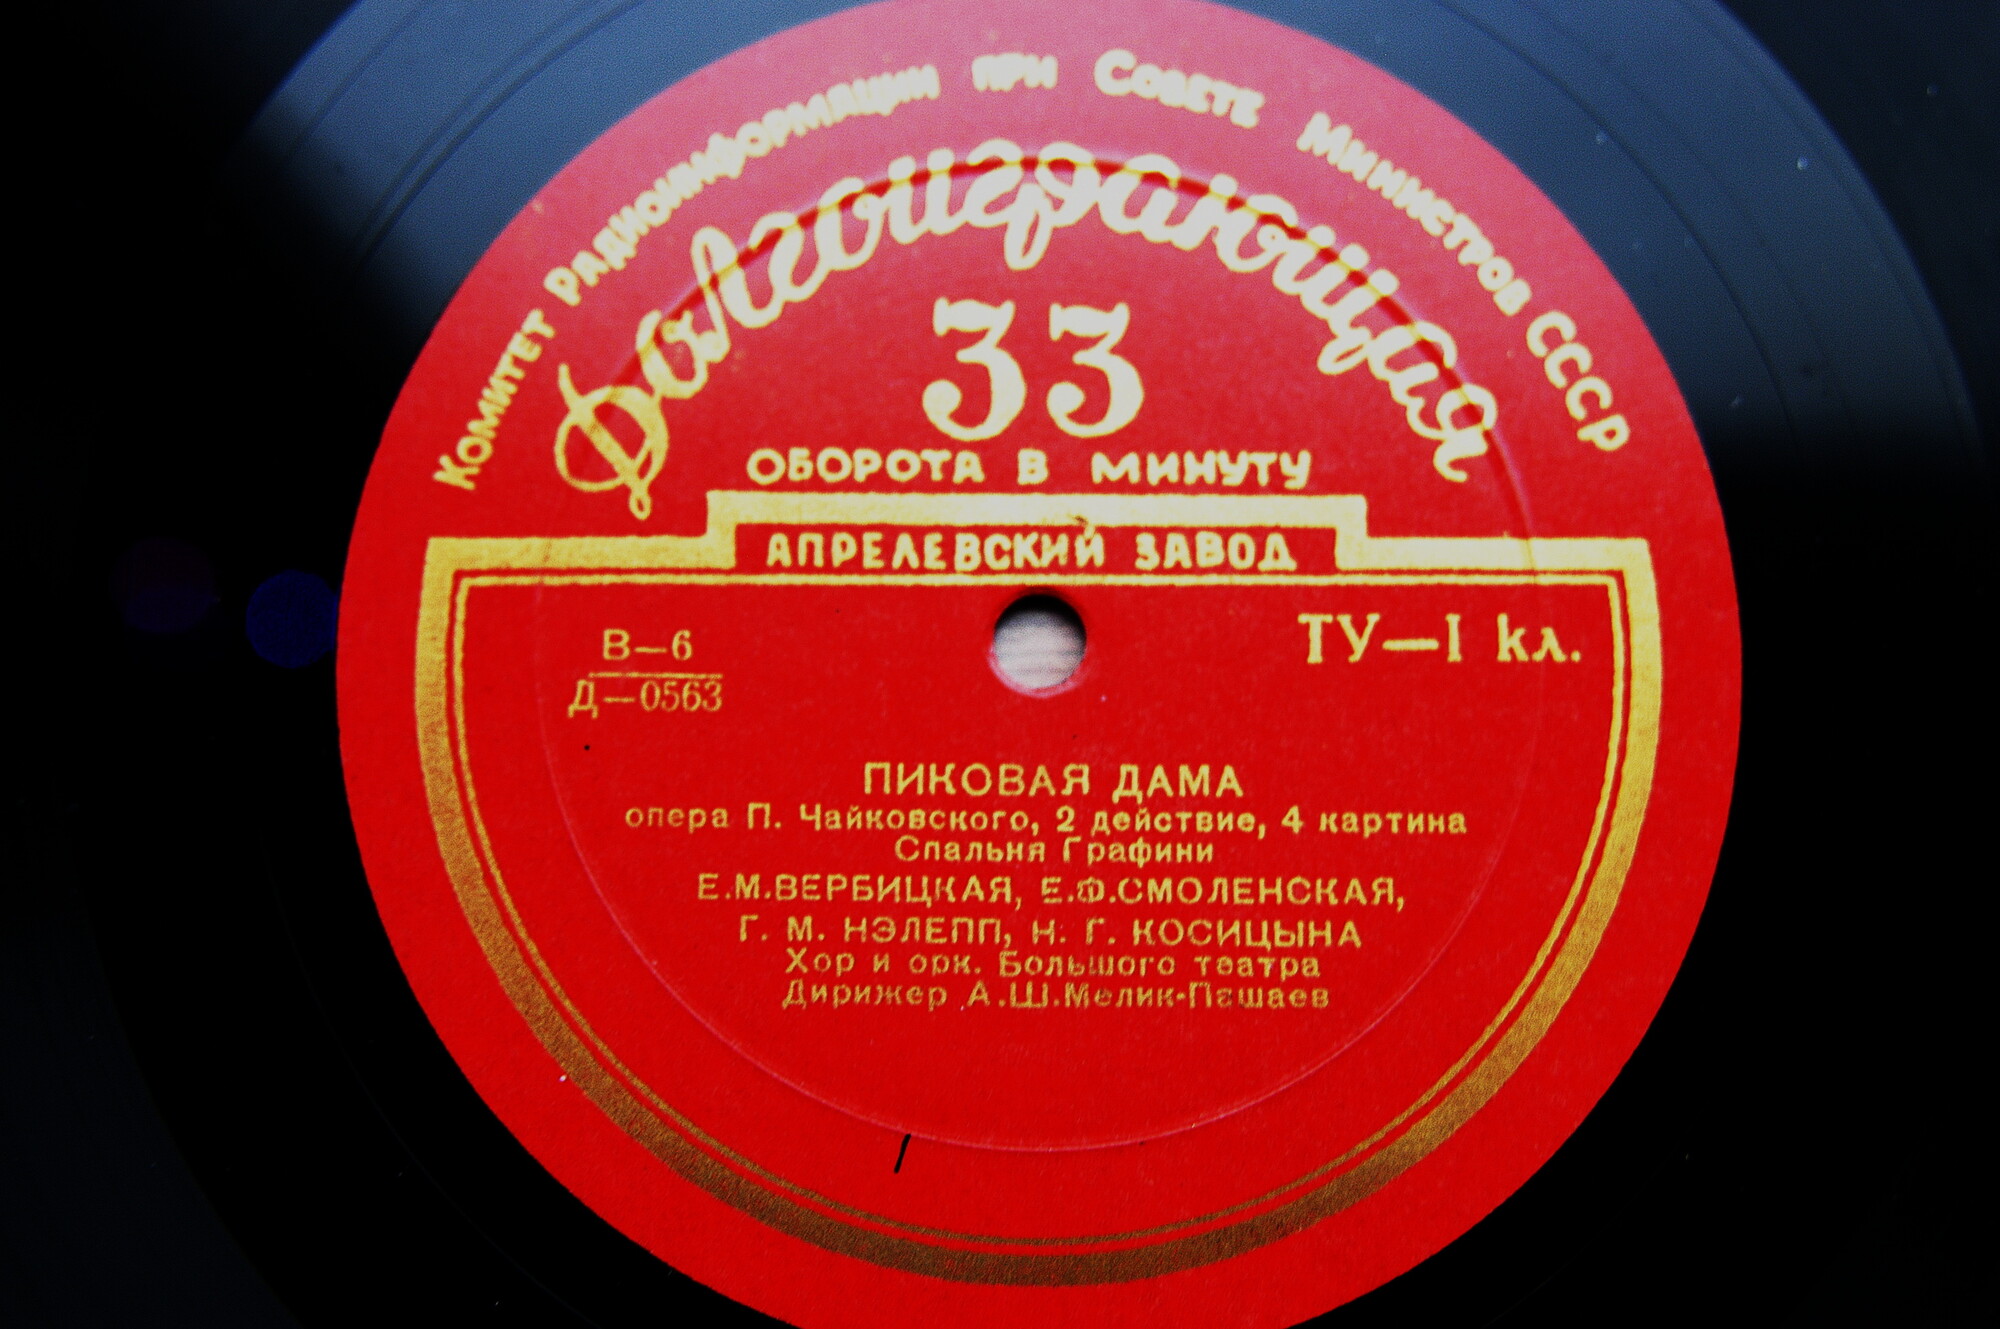 П. ЧАЙКОВСКИЙ (1840-1893): Пиковая дама, опера в 3 д. (А. Мелик-Пашаев)